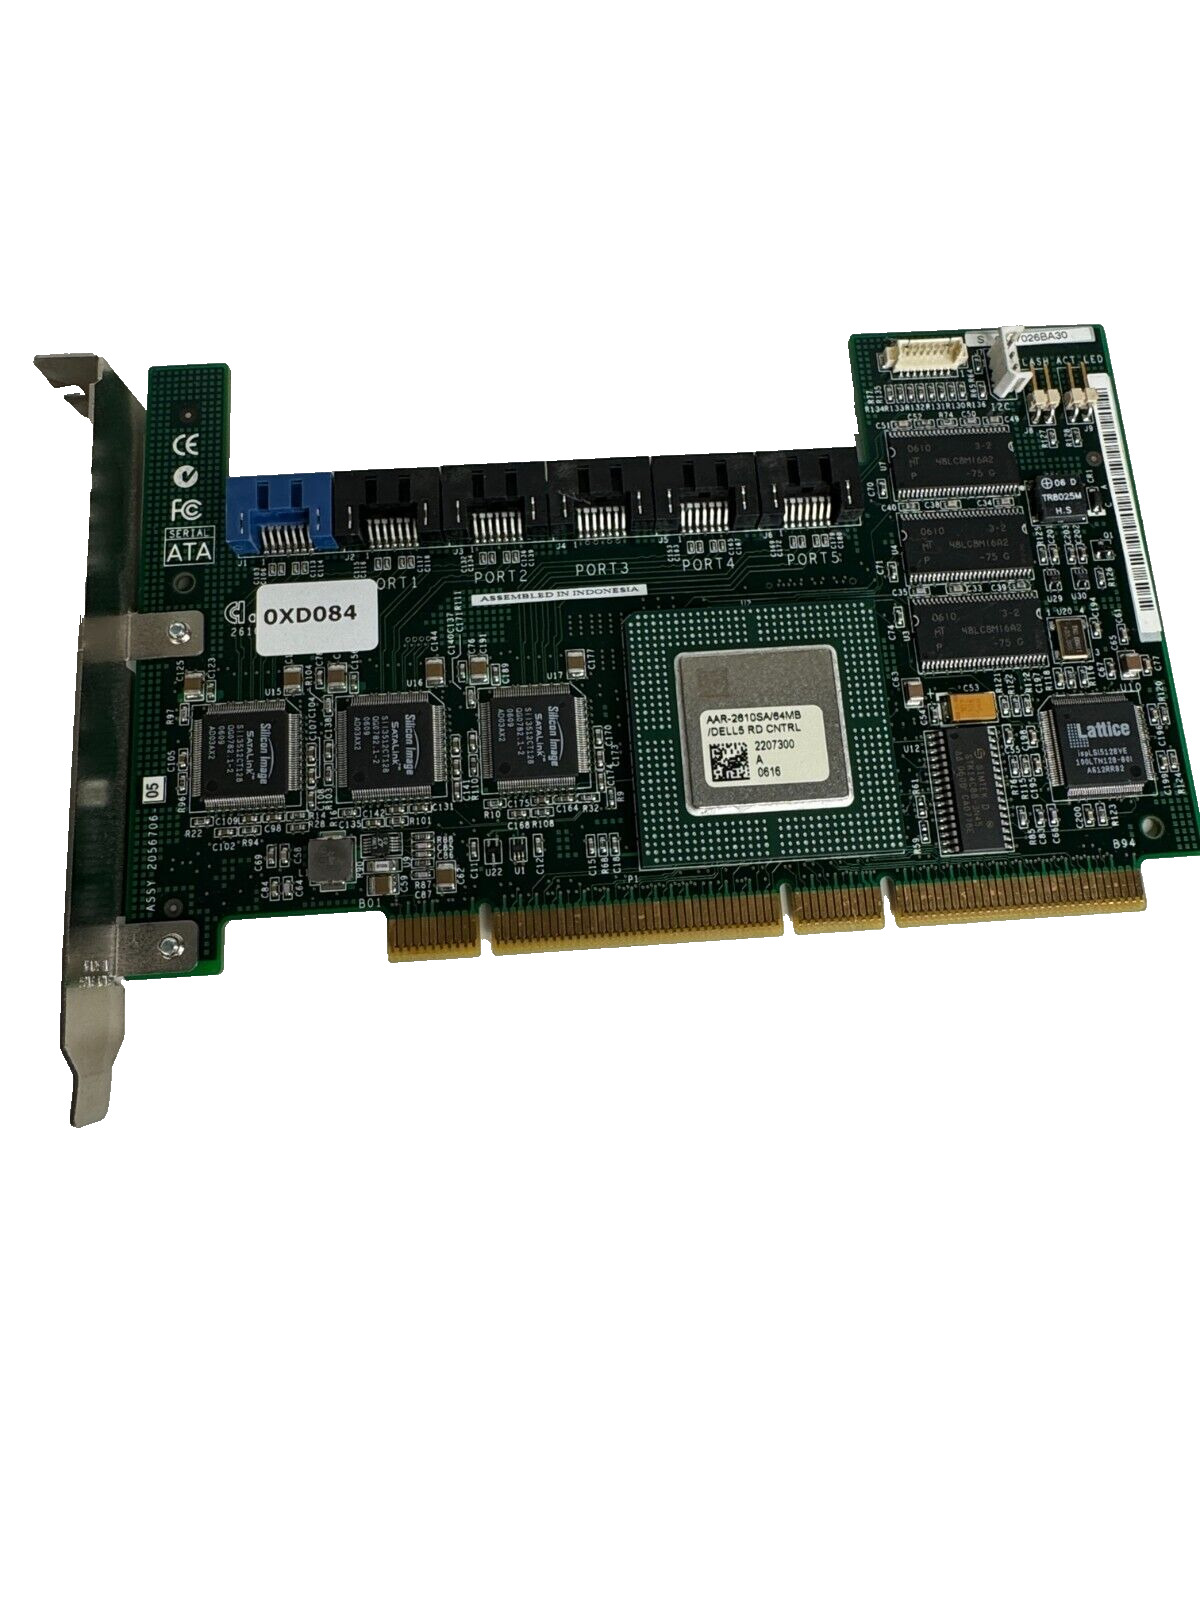 Adaptec AAR-2610SA 64MB DELL 4 PCI-X 6 Port SATA RAID Controller Card 0XD084